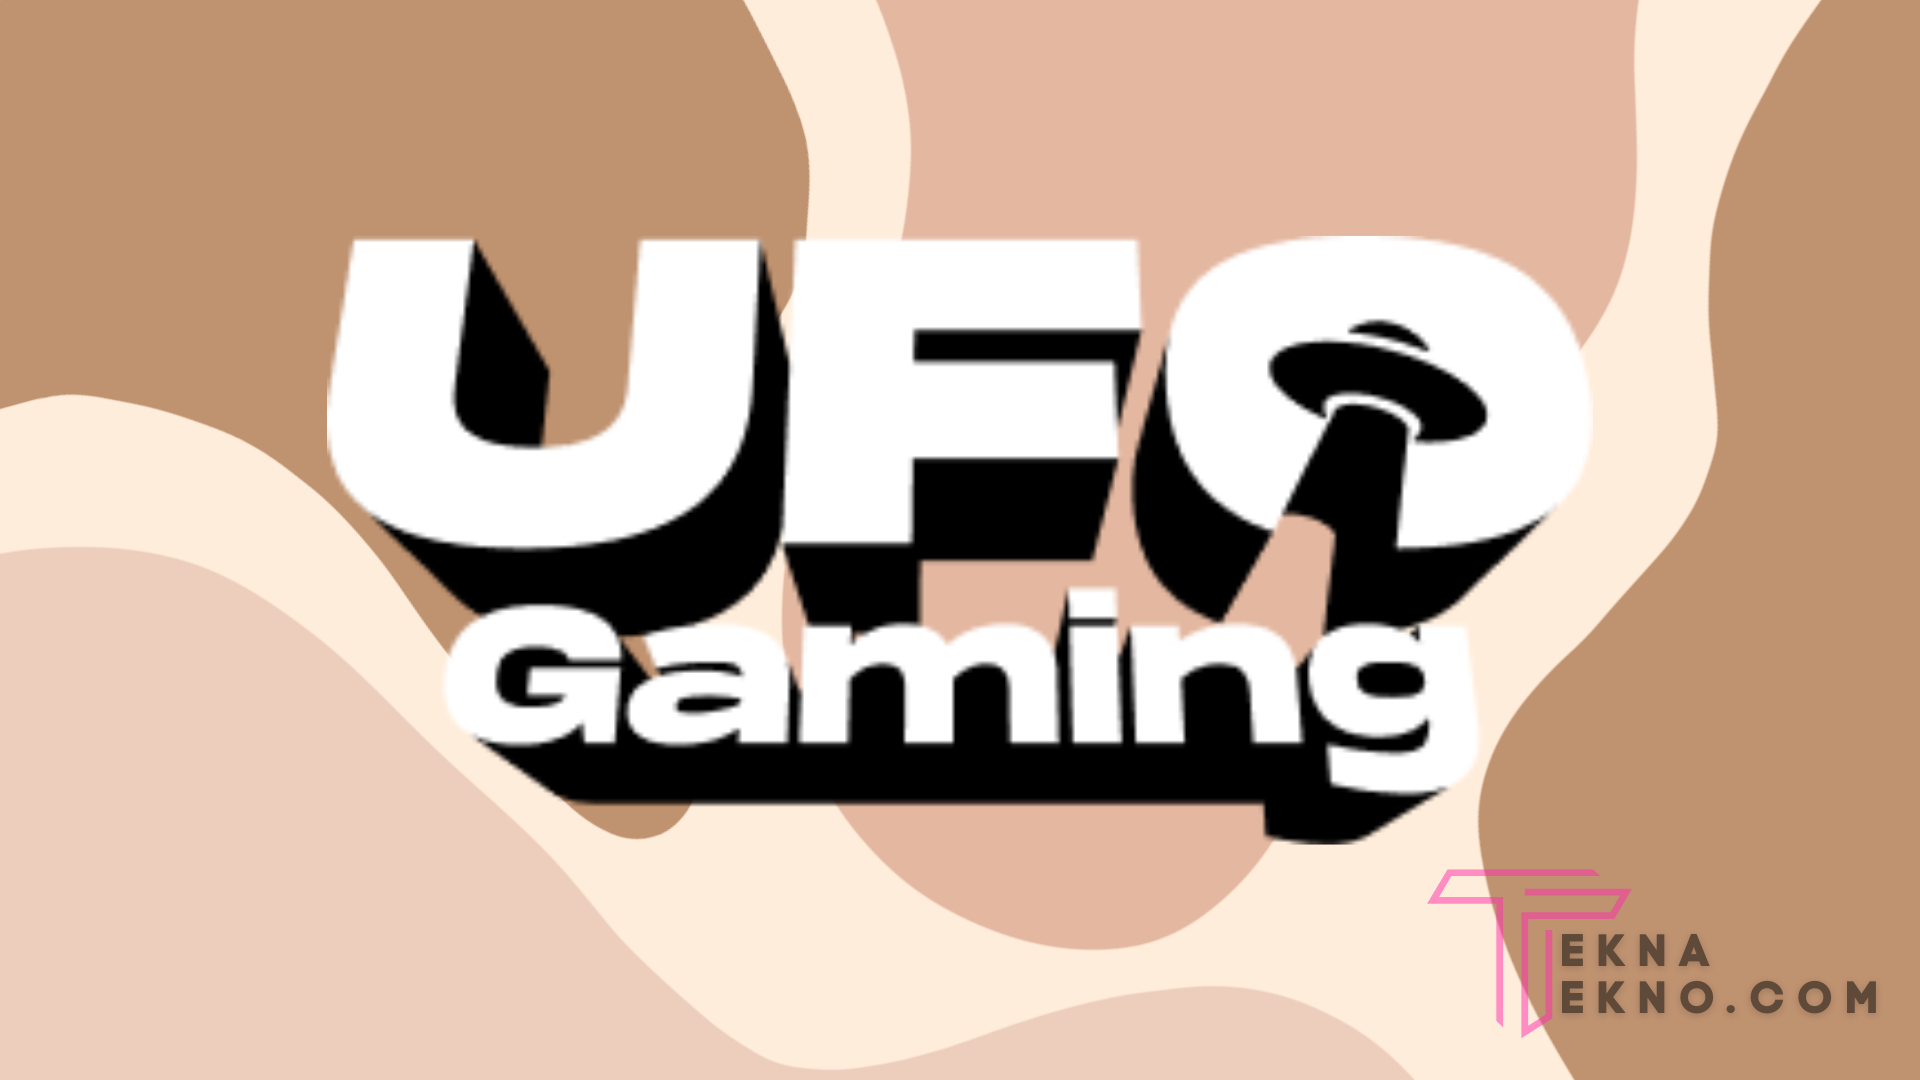 Prediksi Harga UFO Gaming Token